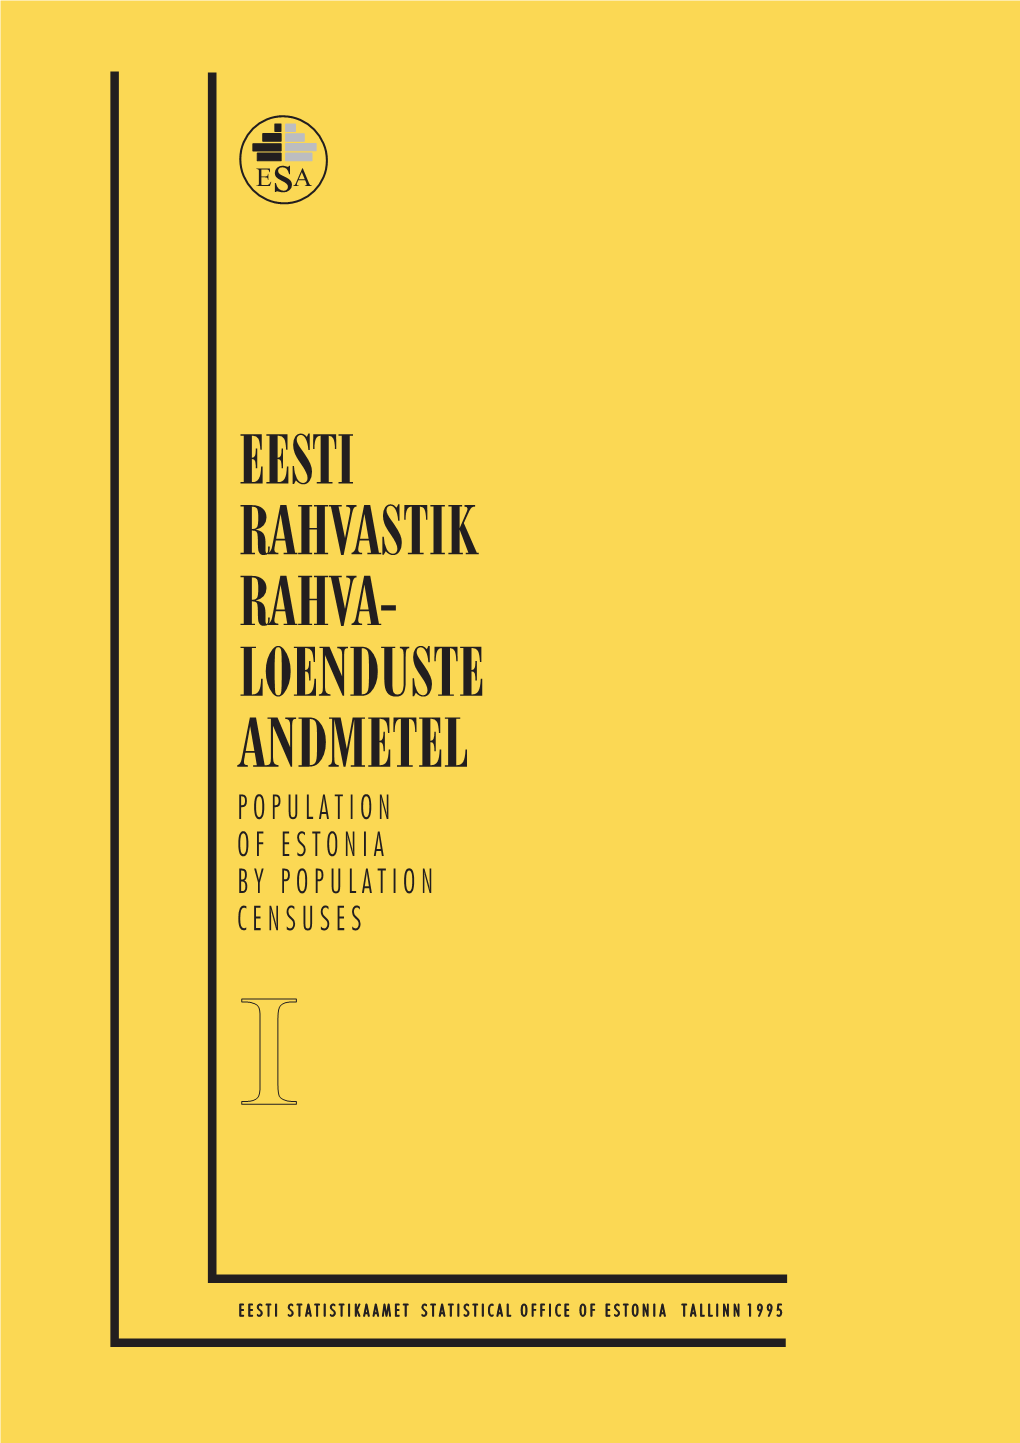 Eesti Rahvastik Rahva- Loenduste Andmetel Population of Estonia by Population Censuses I